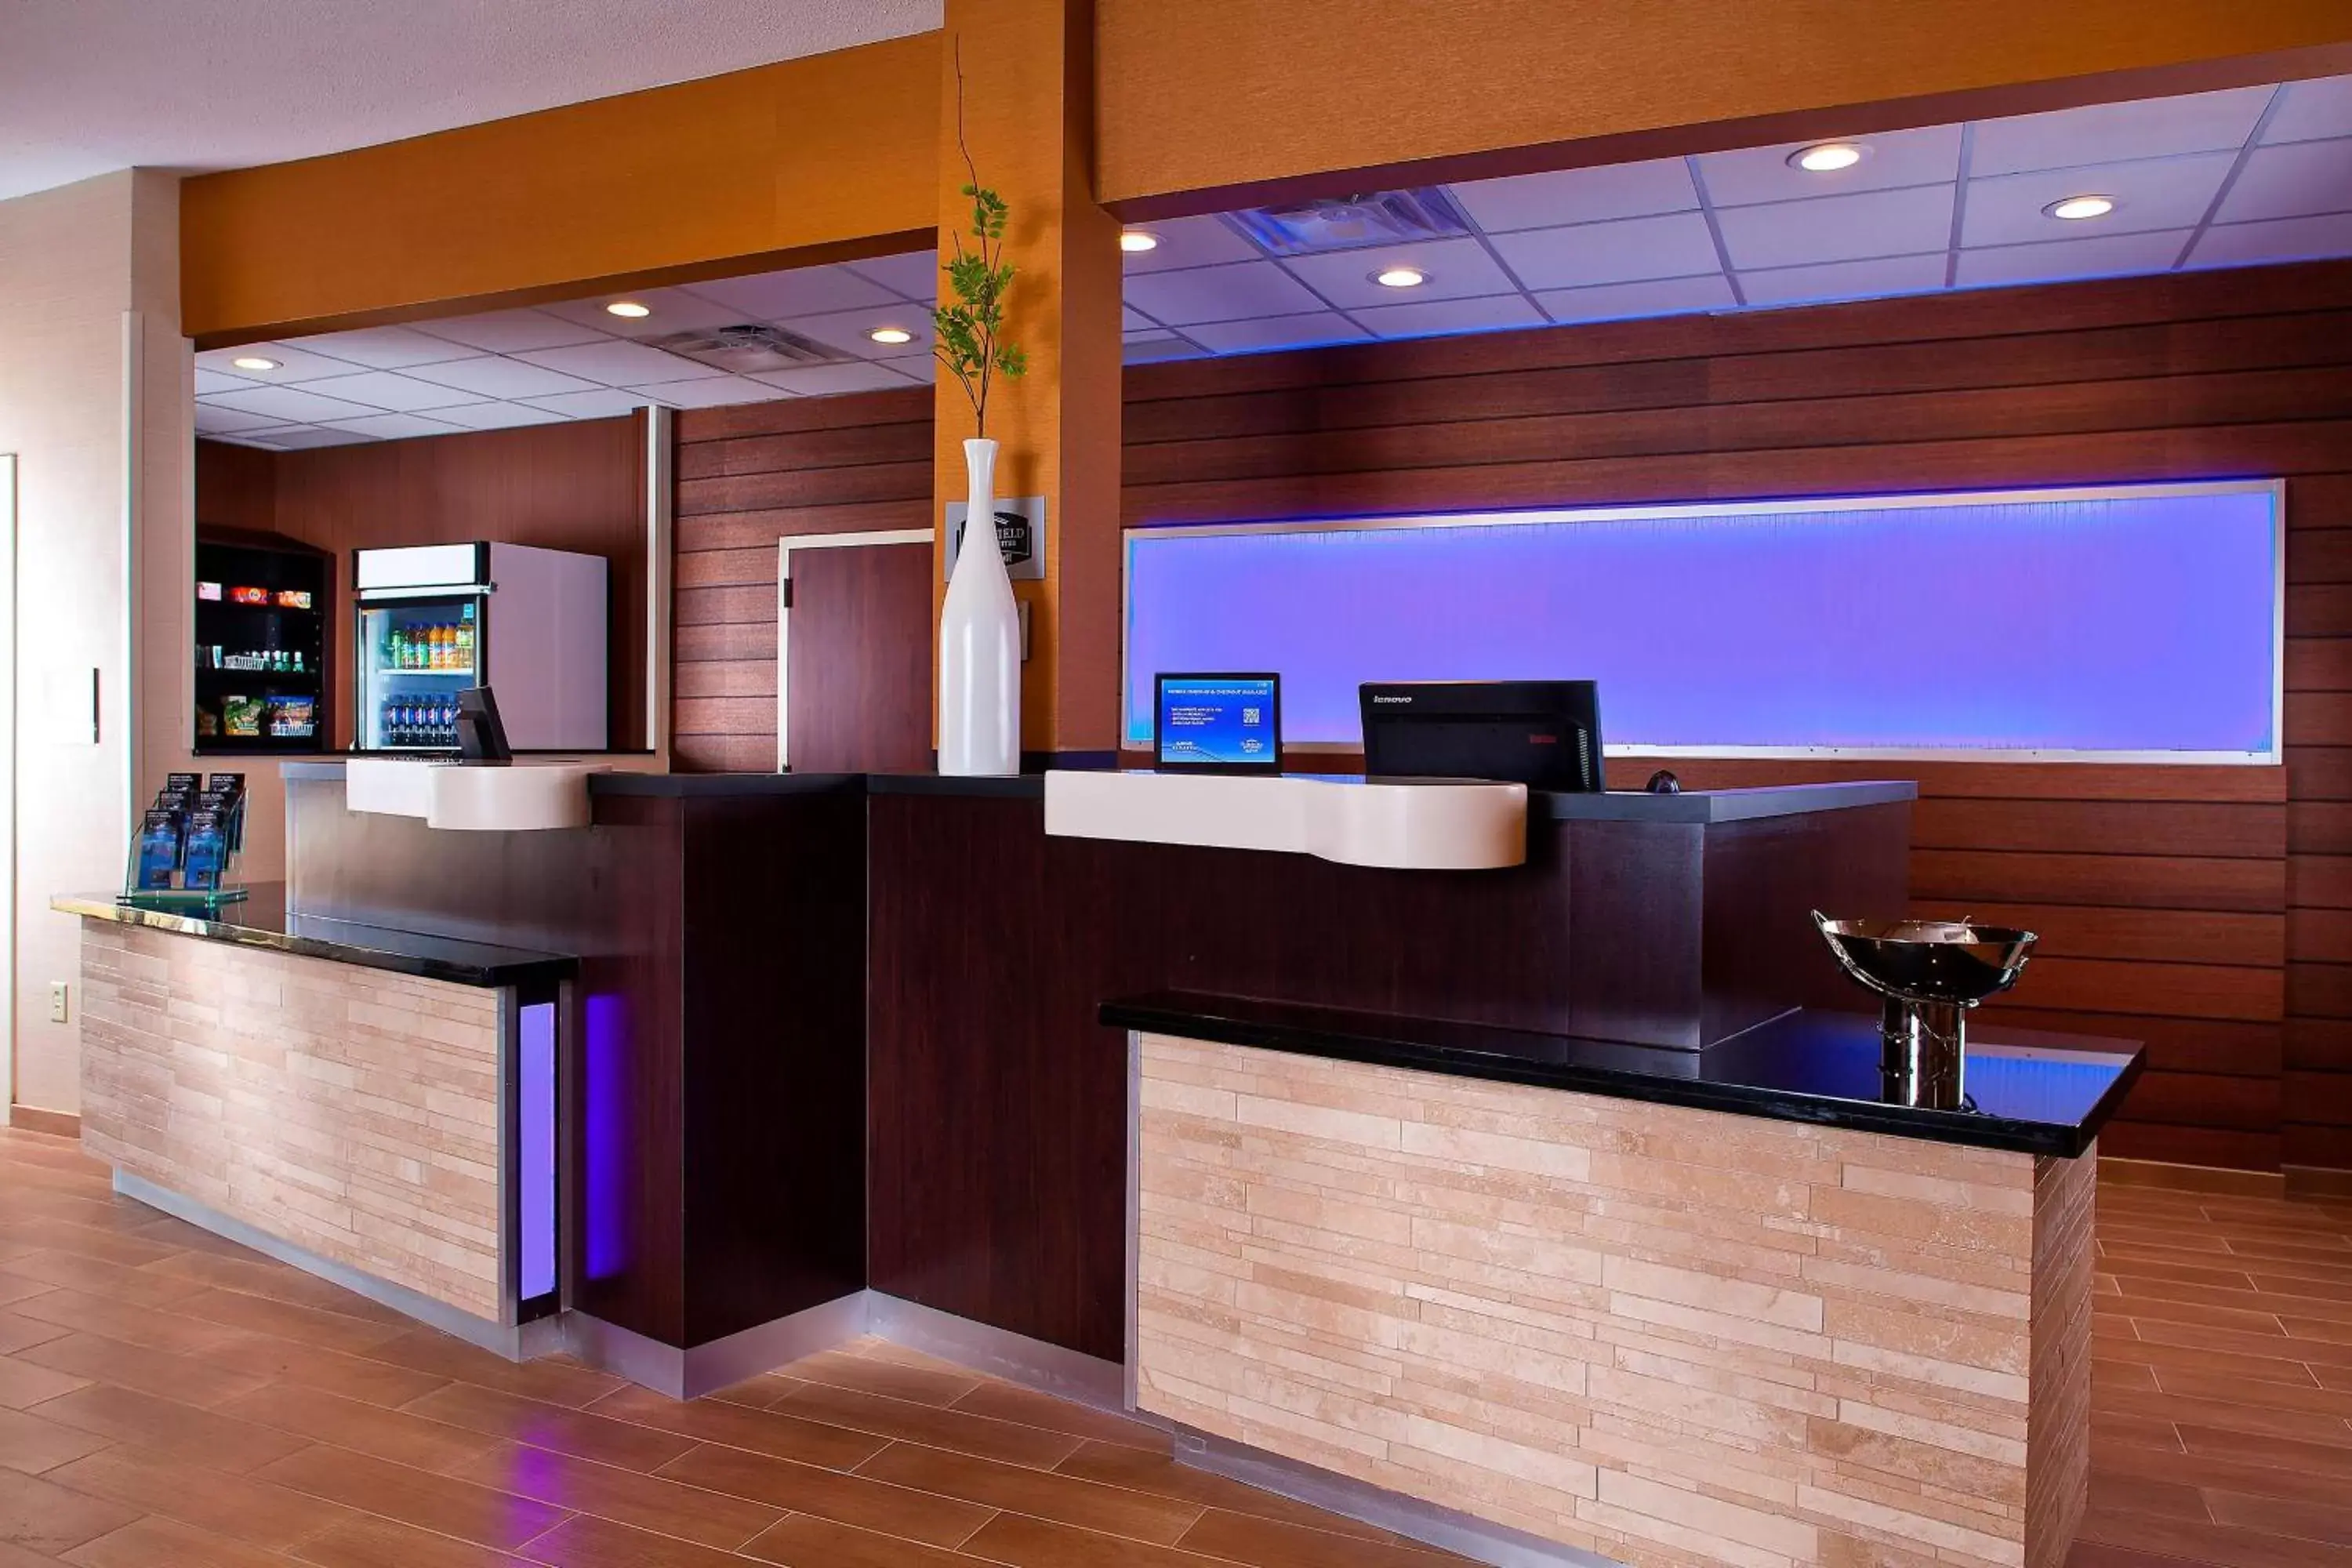 Lobby or reception, Lobby/Reception in Fairfield Inn & Suites Houston Hobby Airport